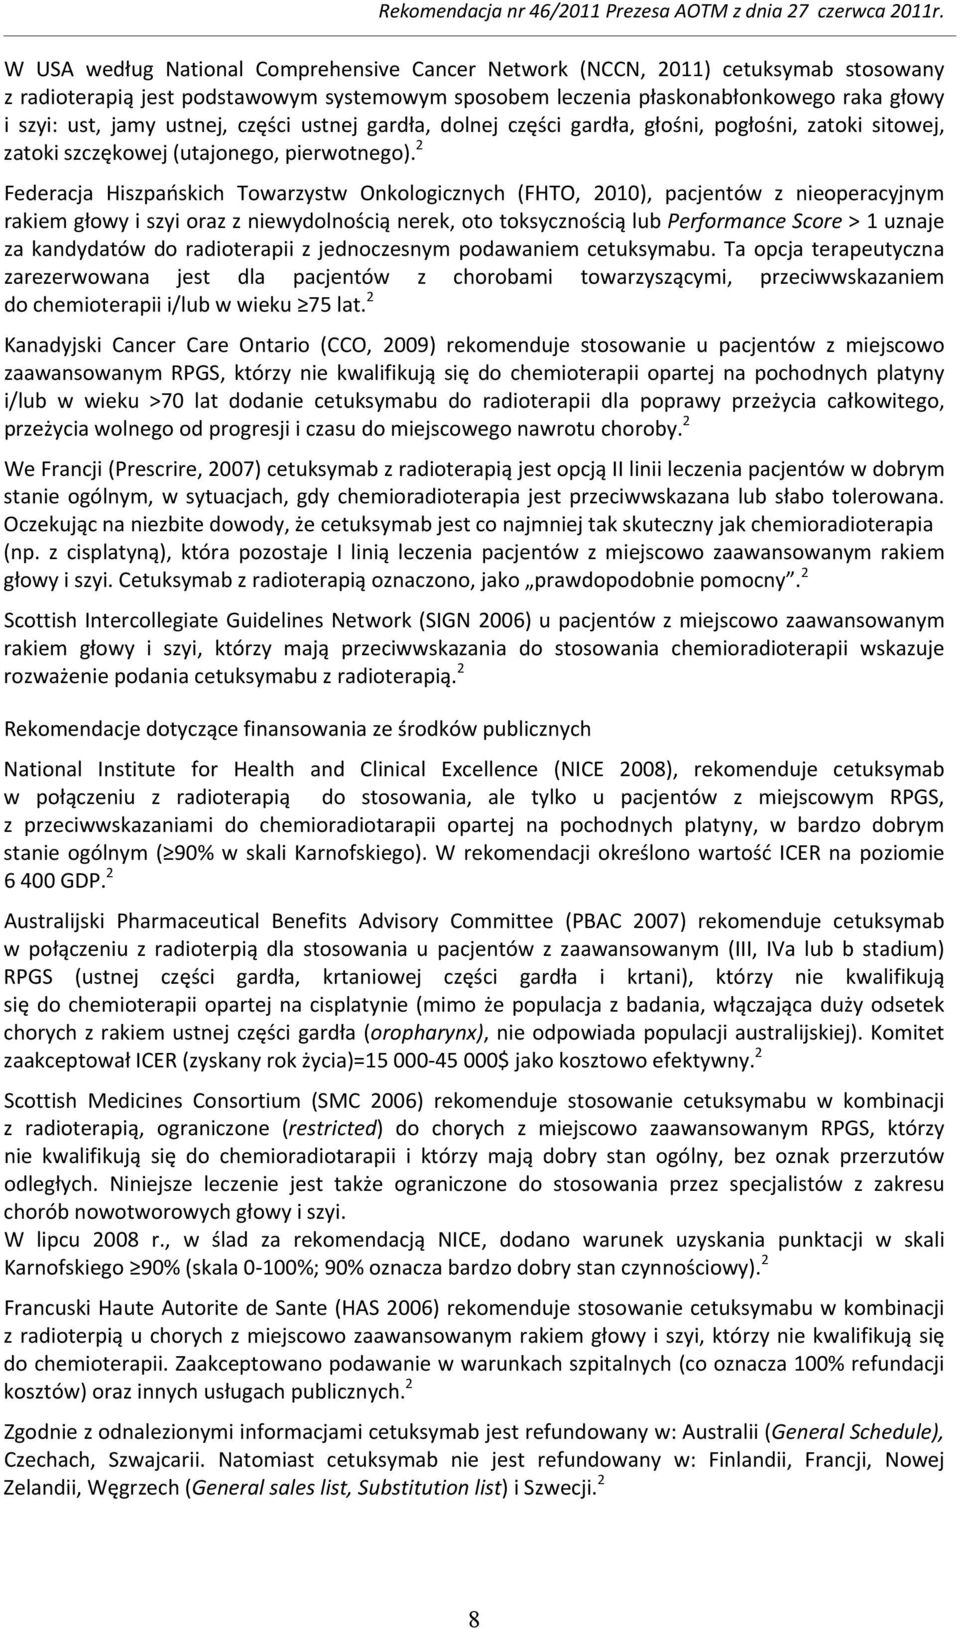 2 Federacja Hiszpańskich Towarzystw Onkologicznych (FHTO, 2010), pacjentów z nieoperacyjnym rakiem głowy i szyi oraz z niewydolnością nerek, oto toksycznością lub Performance Score > 1 uznaje za